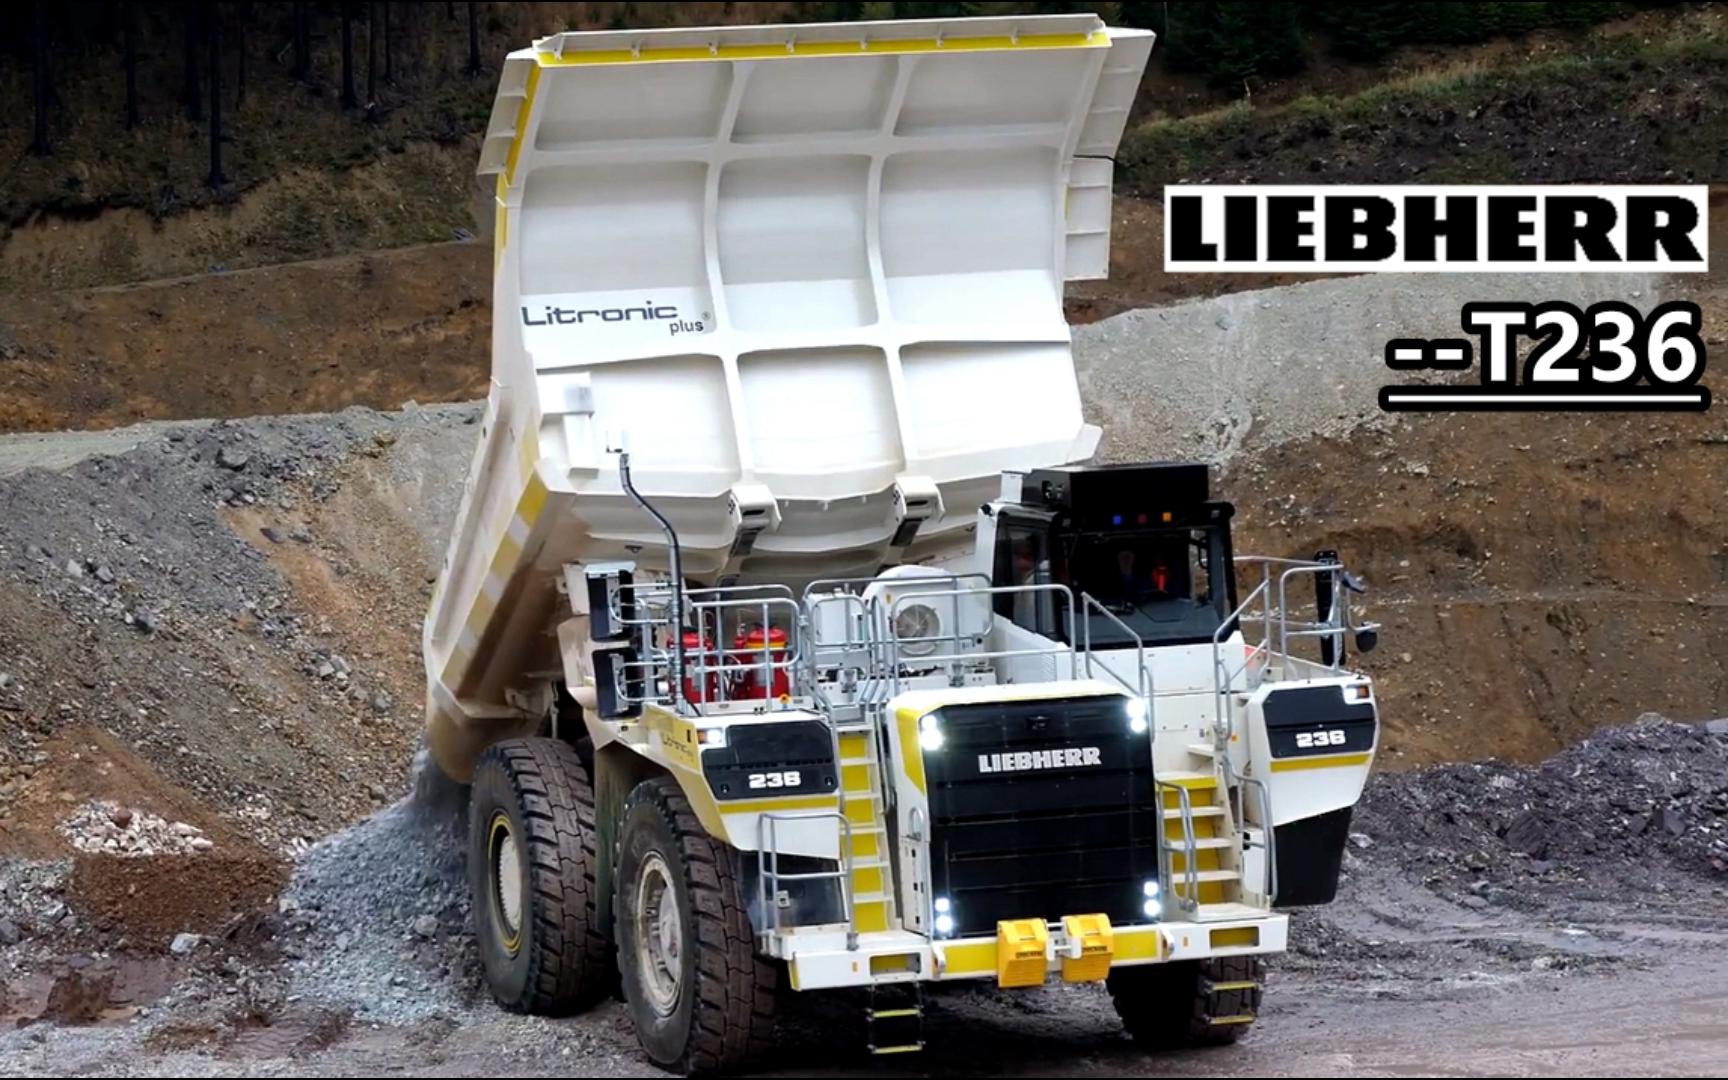 15精品):利勃海尔t236 载重100吨级矿山轻型非公路自卸卡车详细性能